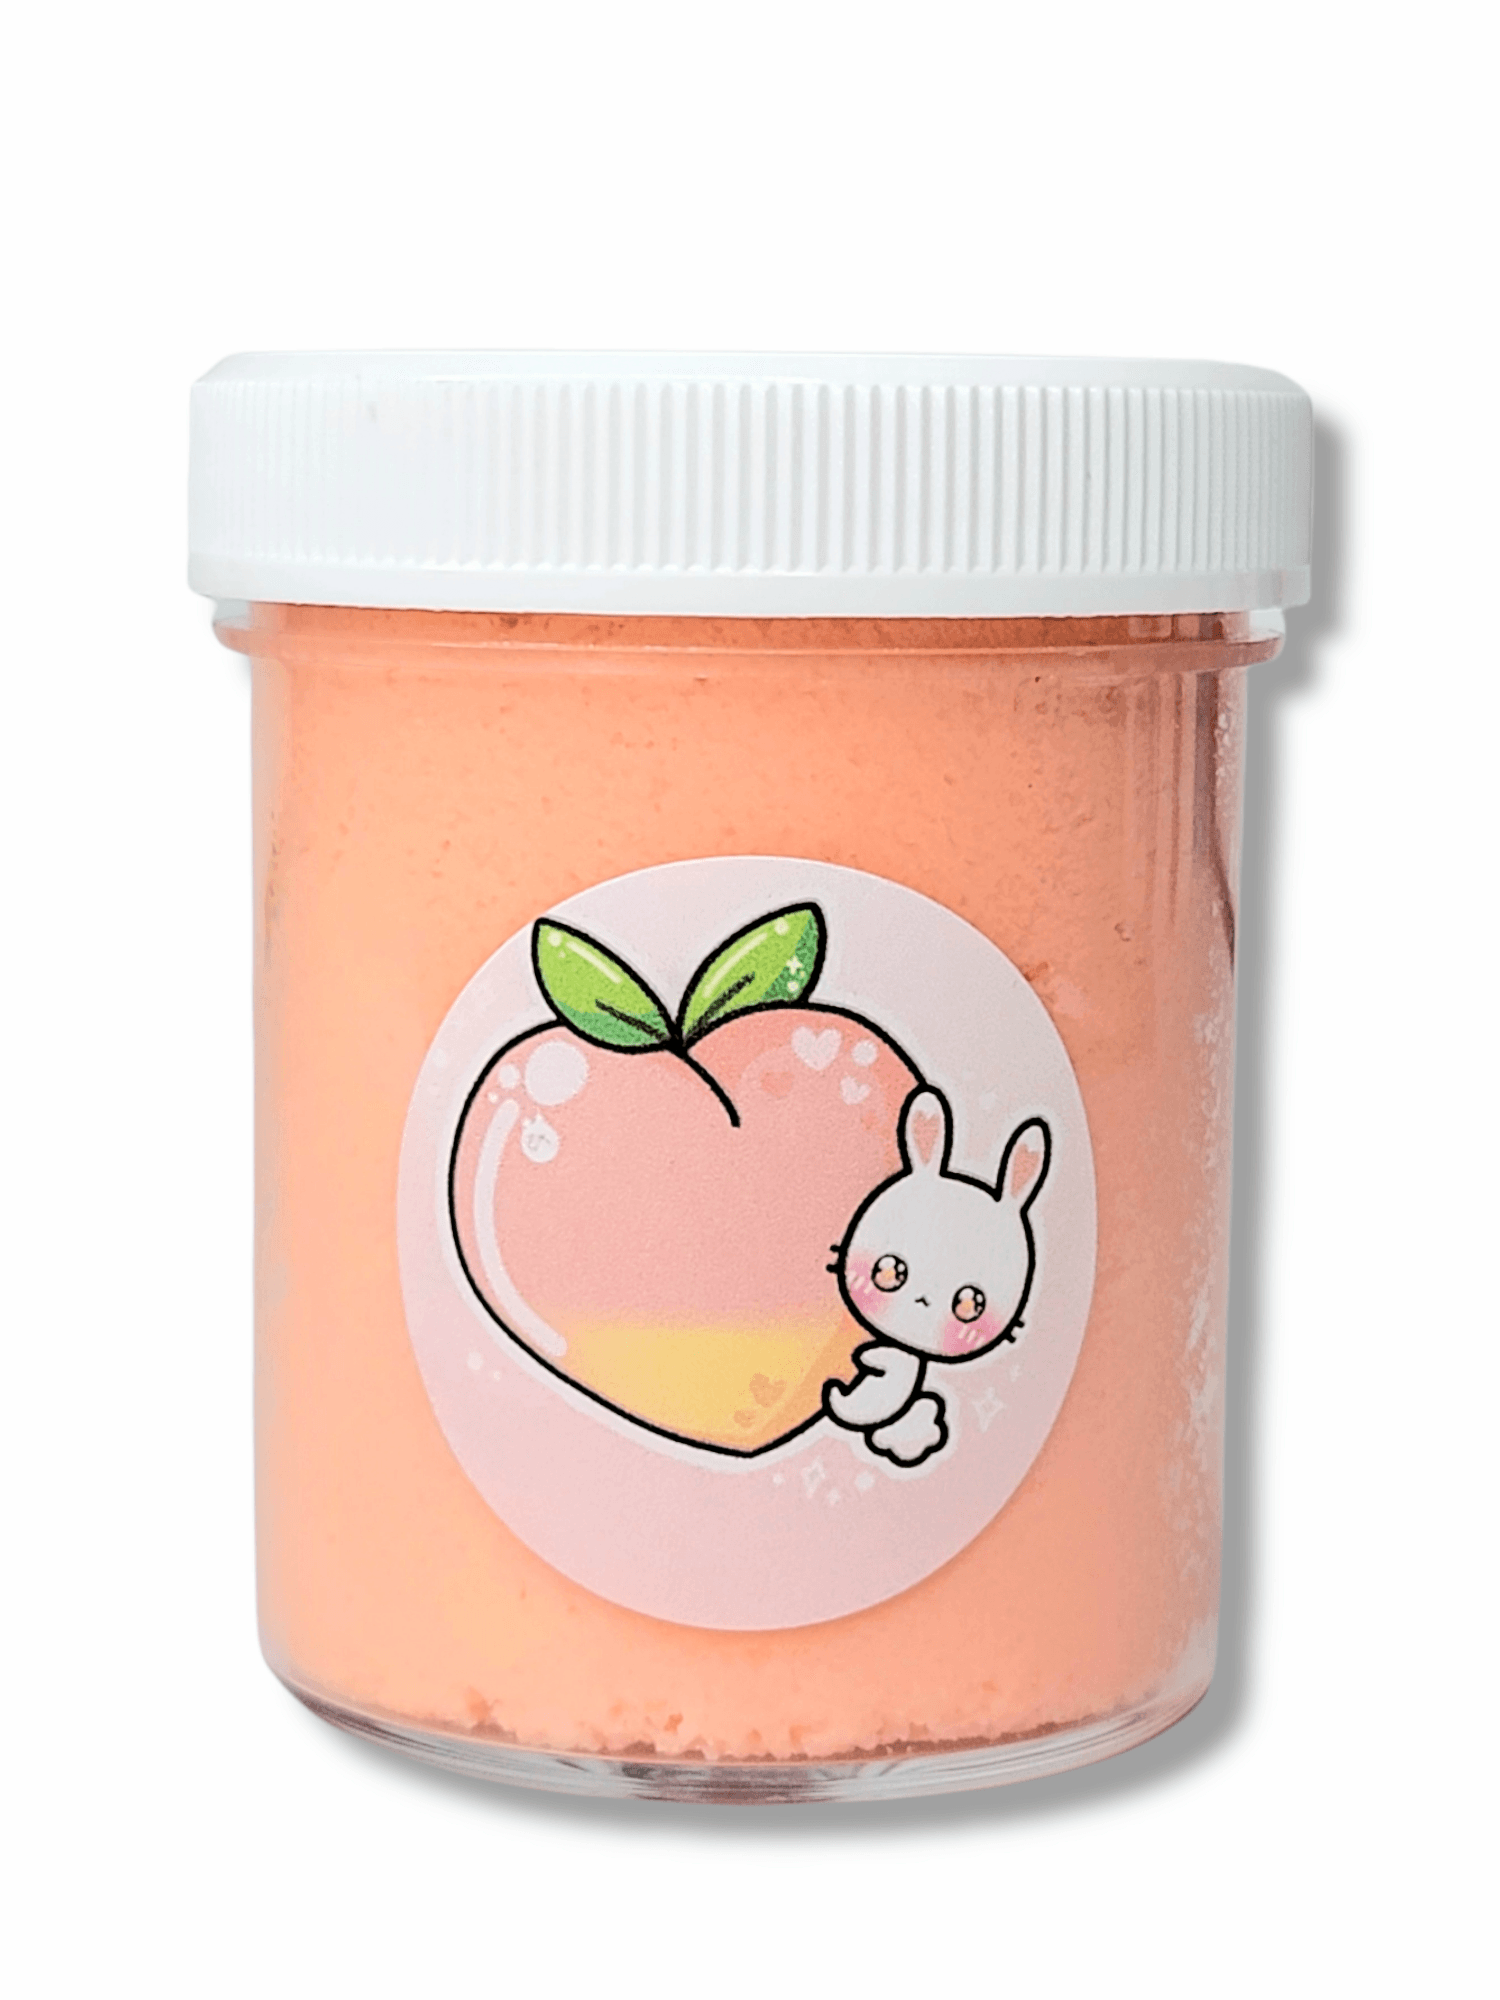 Peach Fuzz Handmade Cloud Slime 4oz Slime by Hoshimi Slimes LLC | Hoshimi Slimes LLC